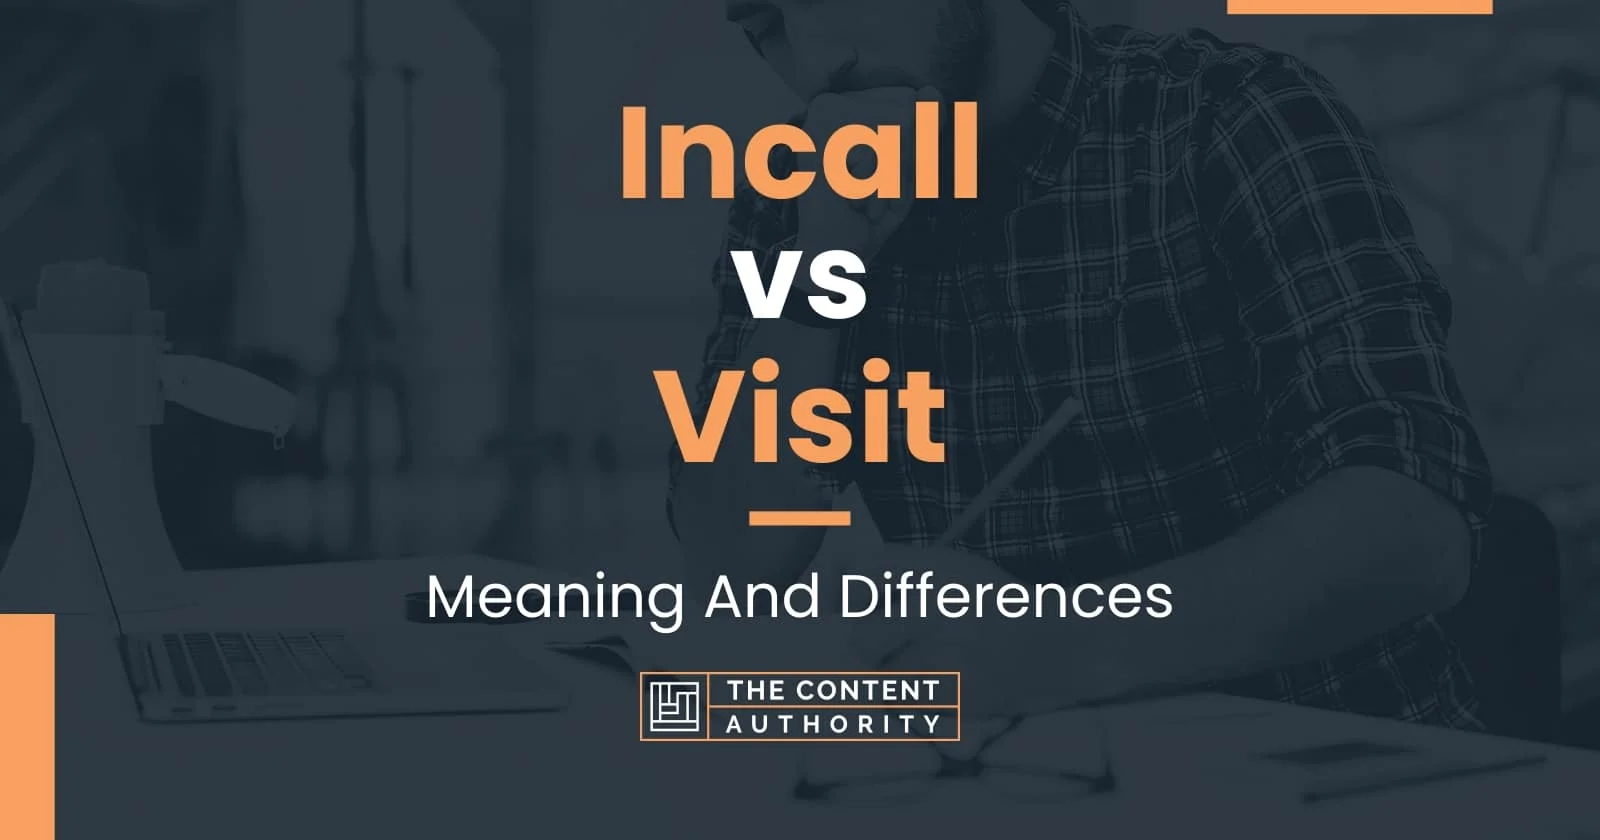 Incall vs Outcall